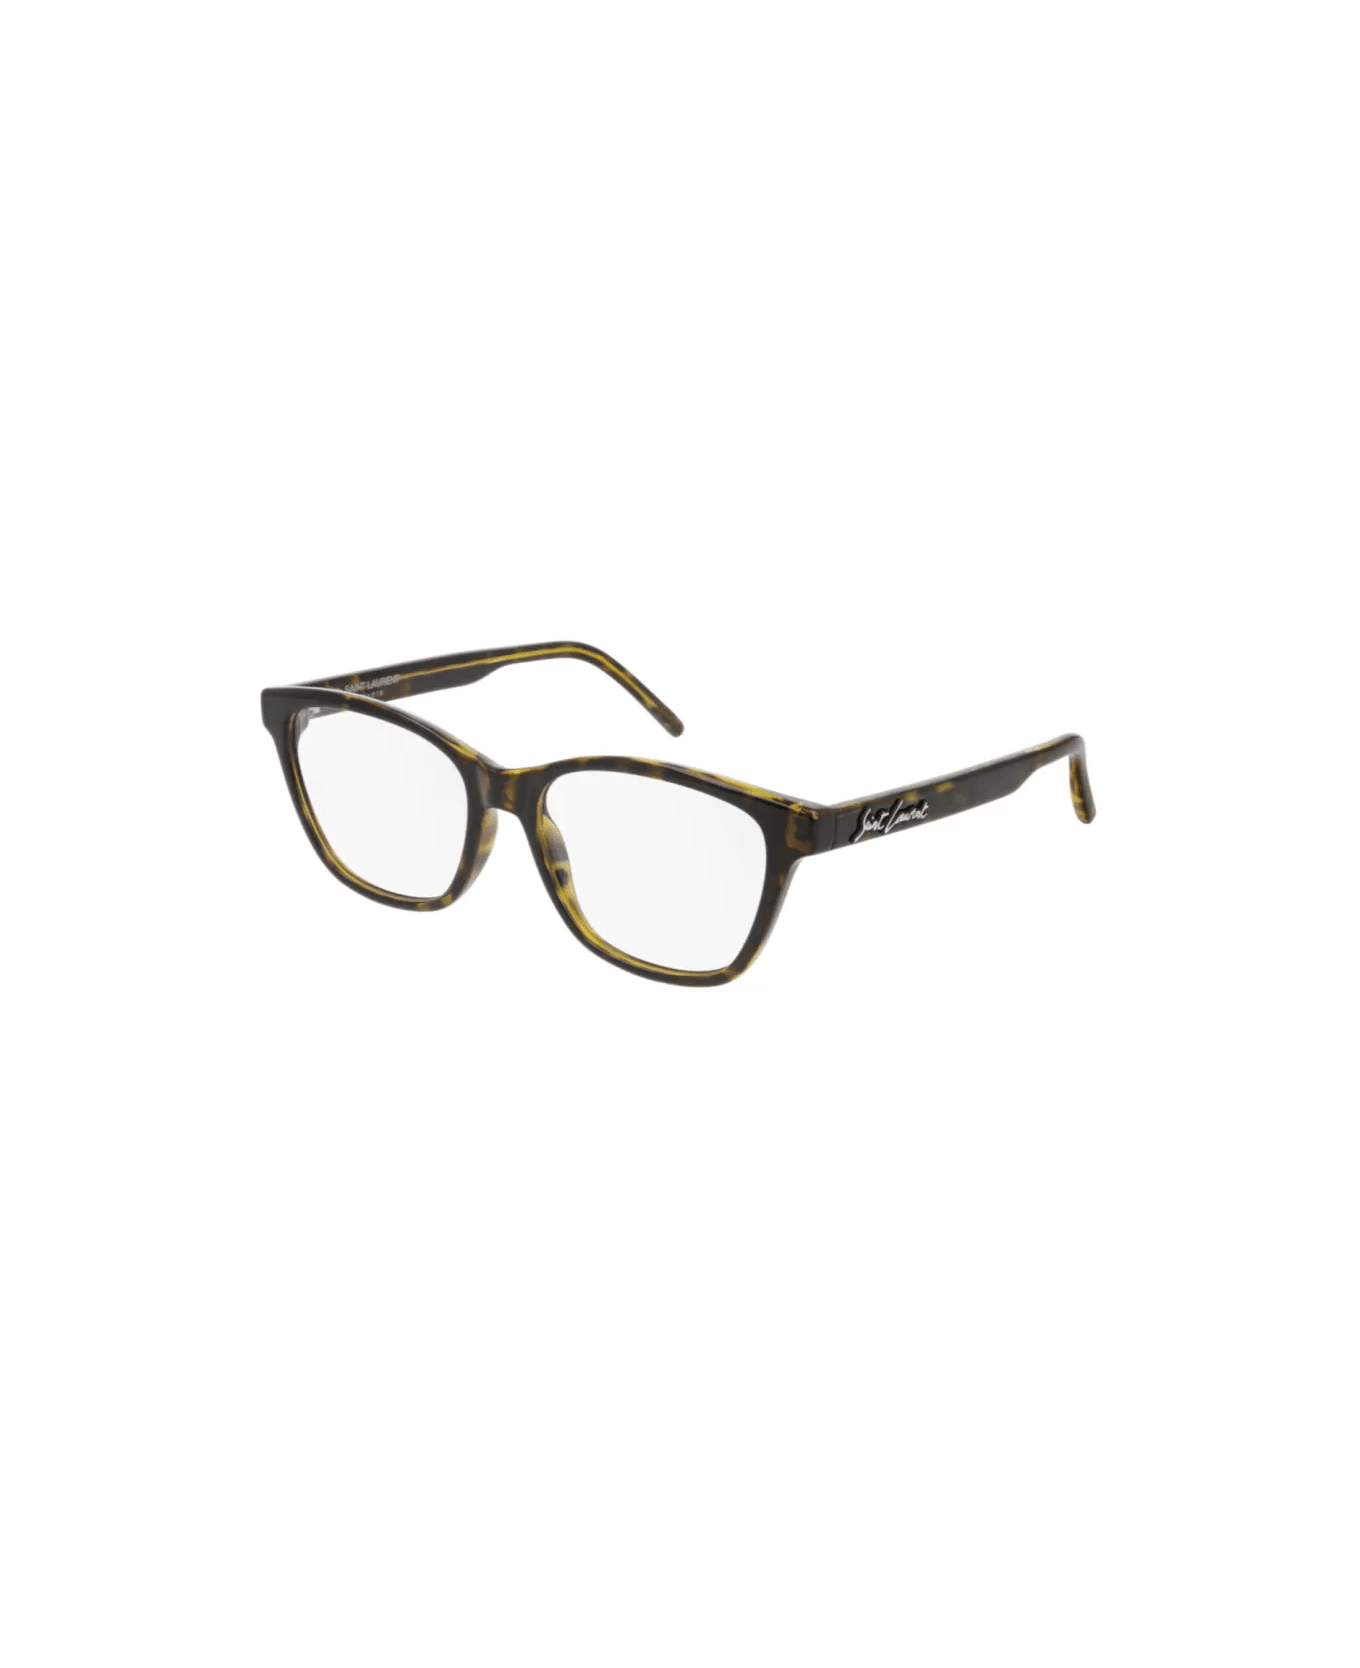 Saint Laurent Eyewear sl 338 002 Glasses - Tortoise